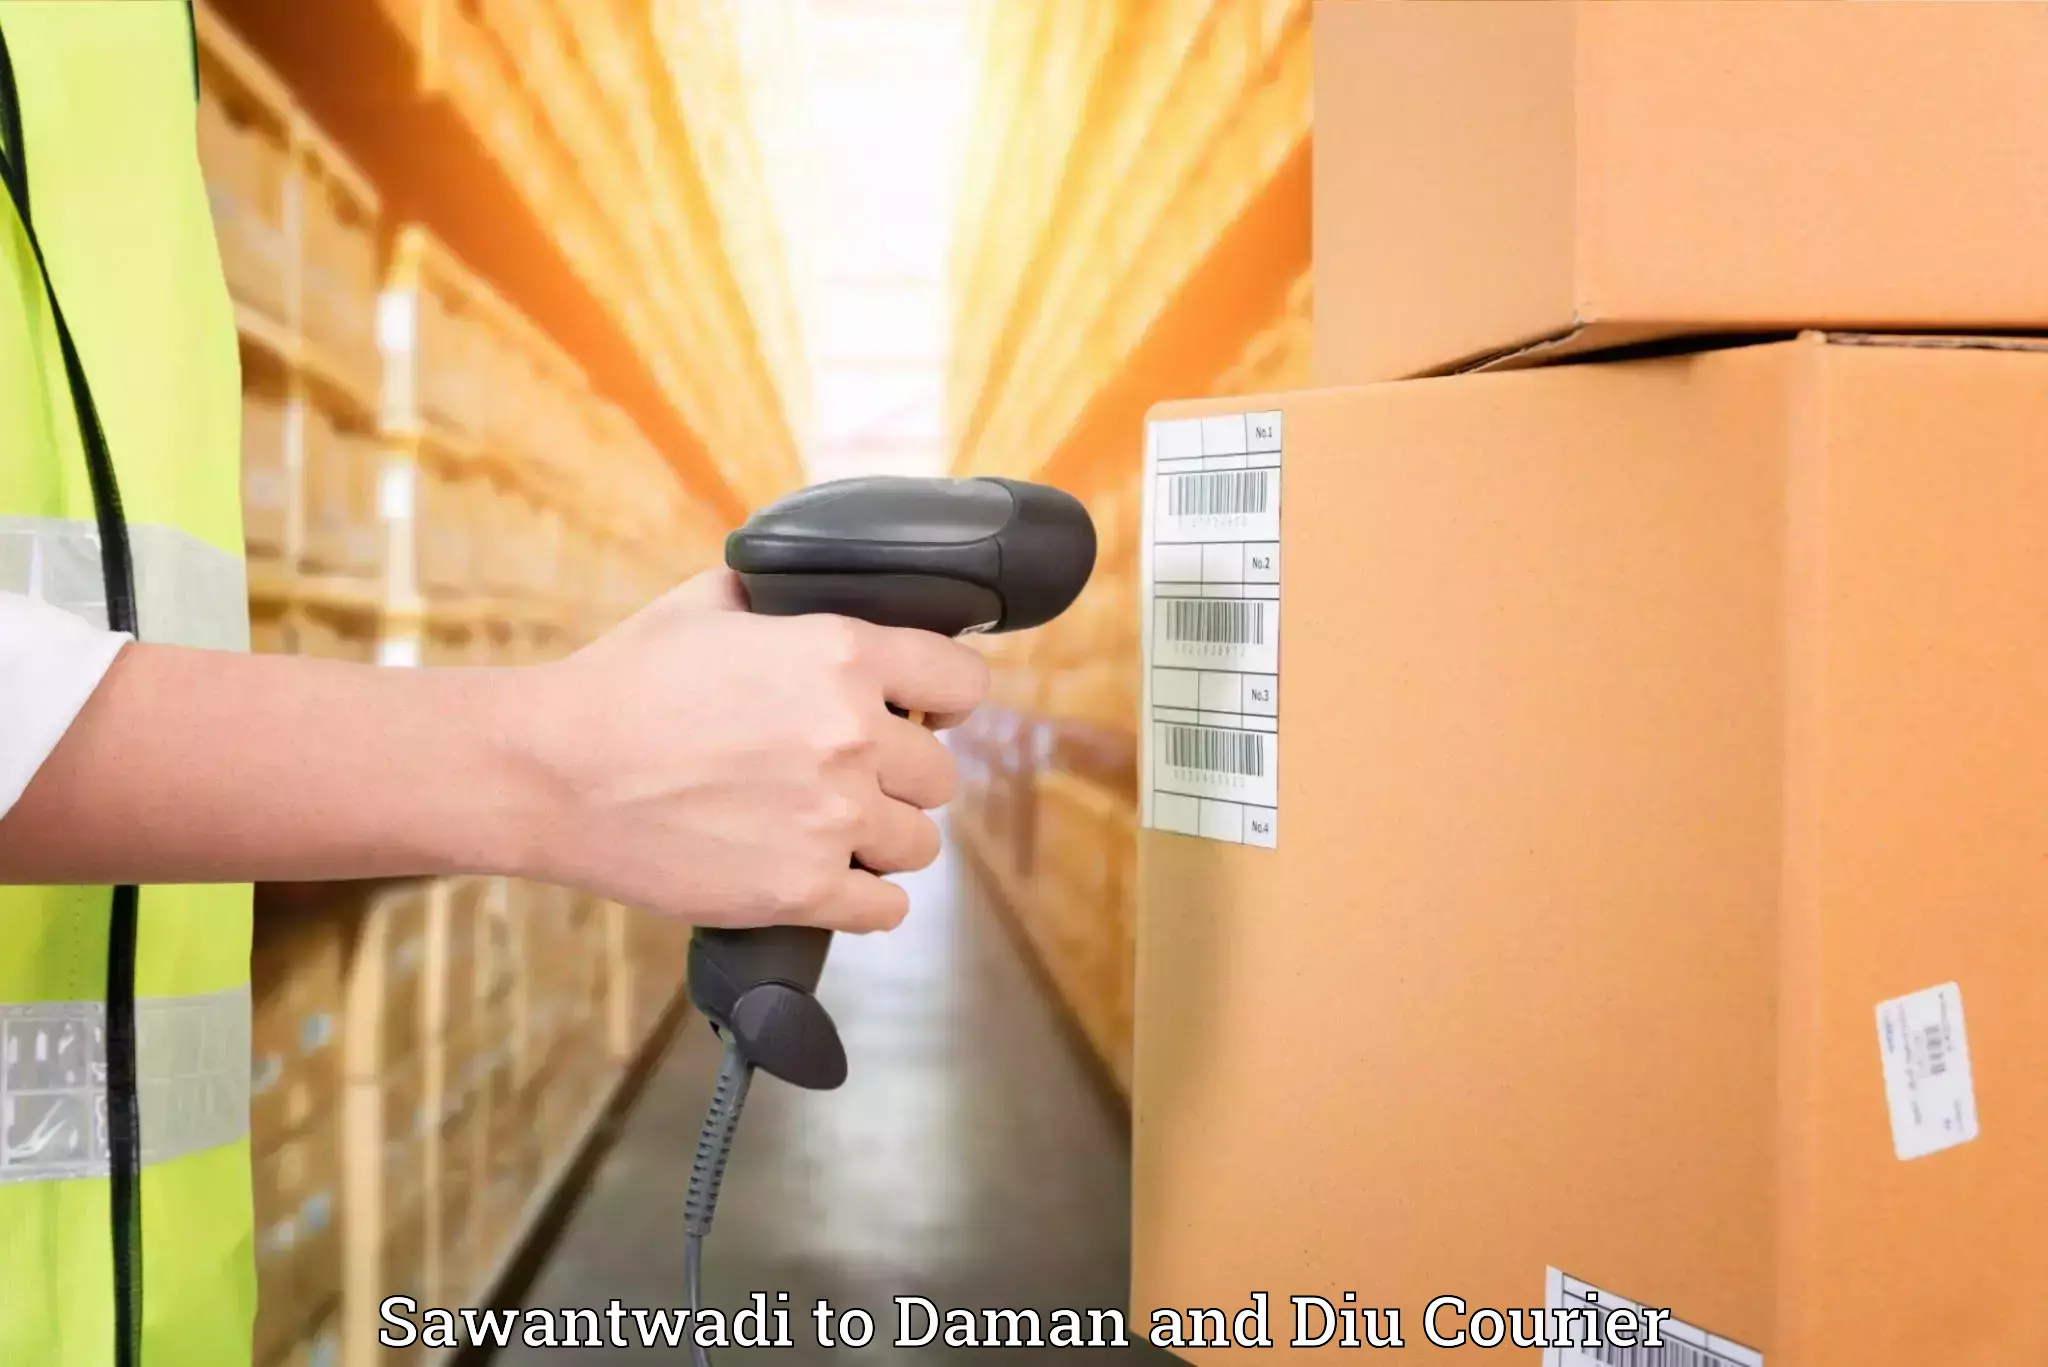 Furniture transport experts Sawantwadi to Diu